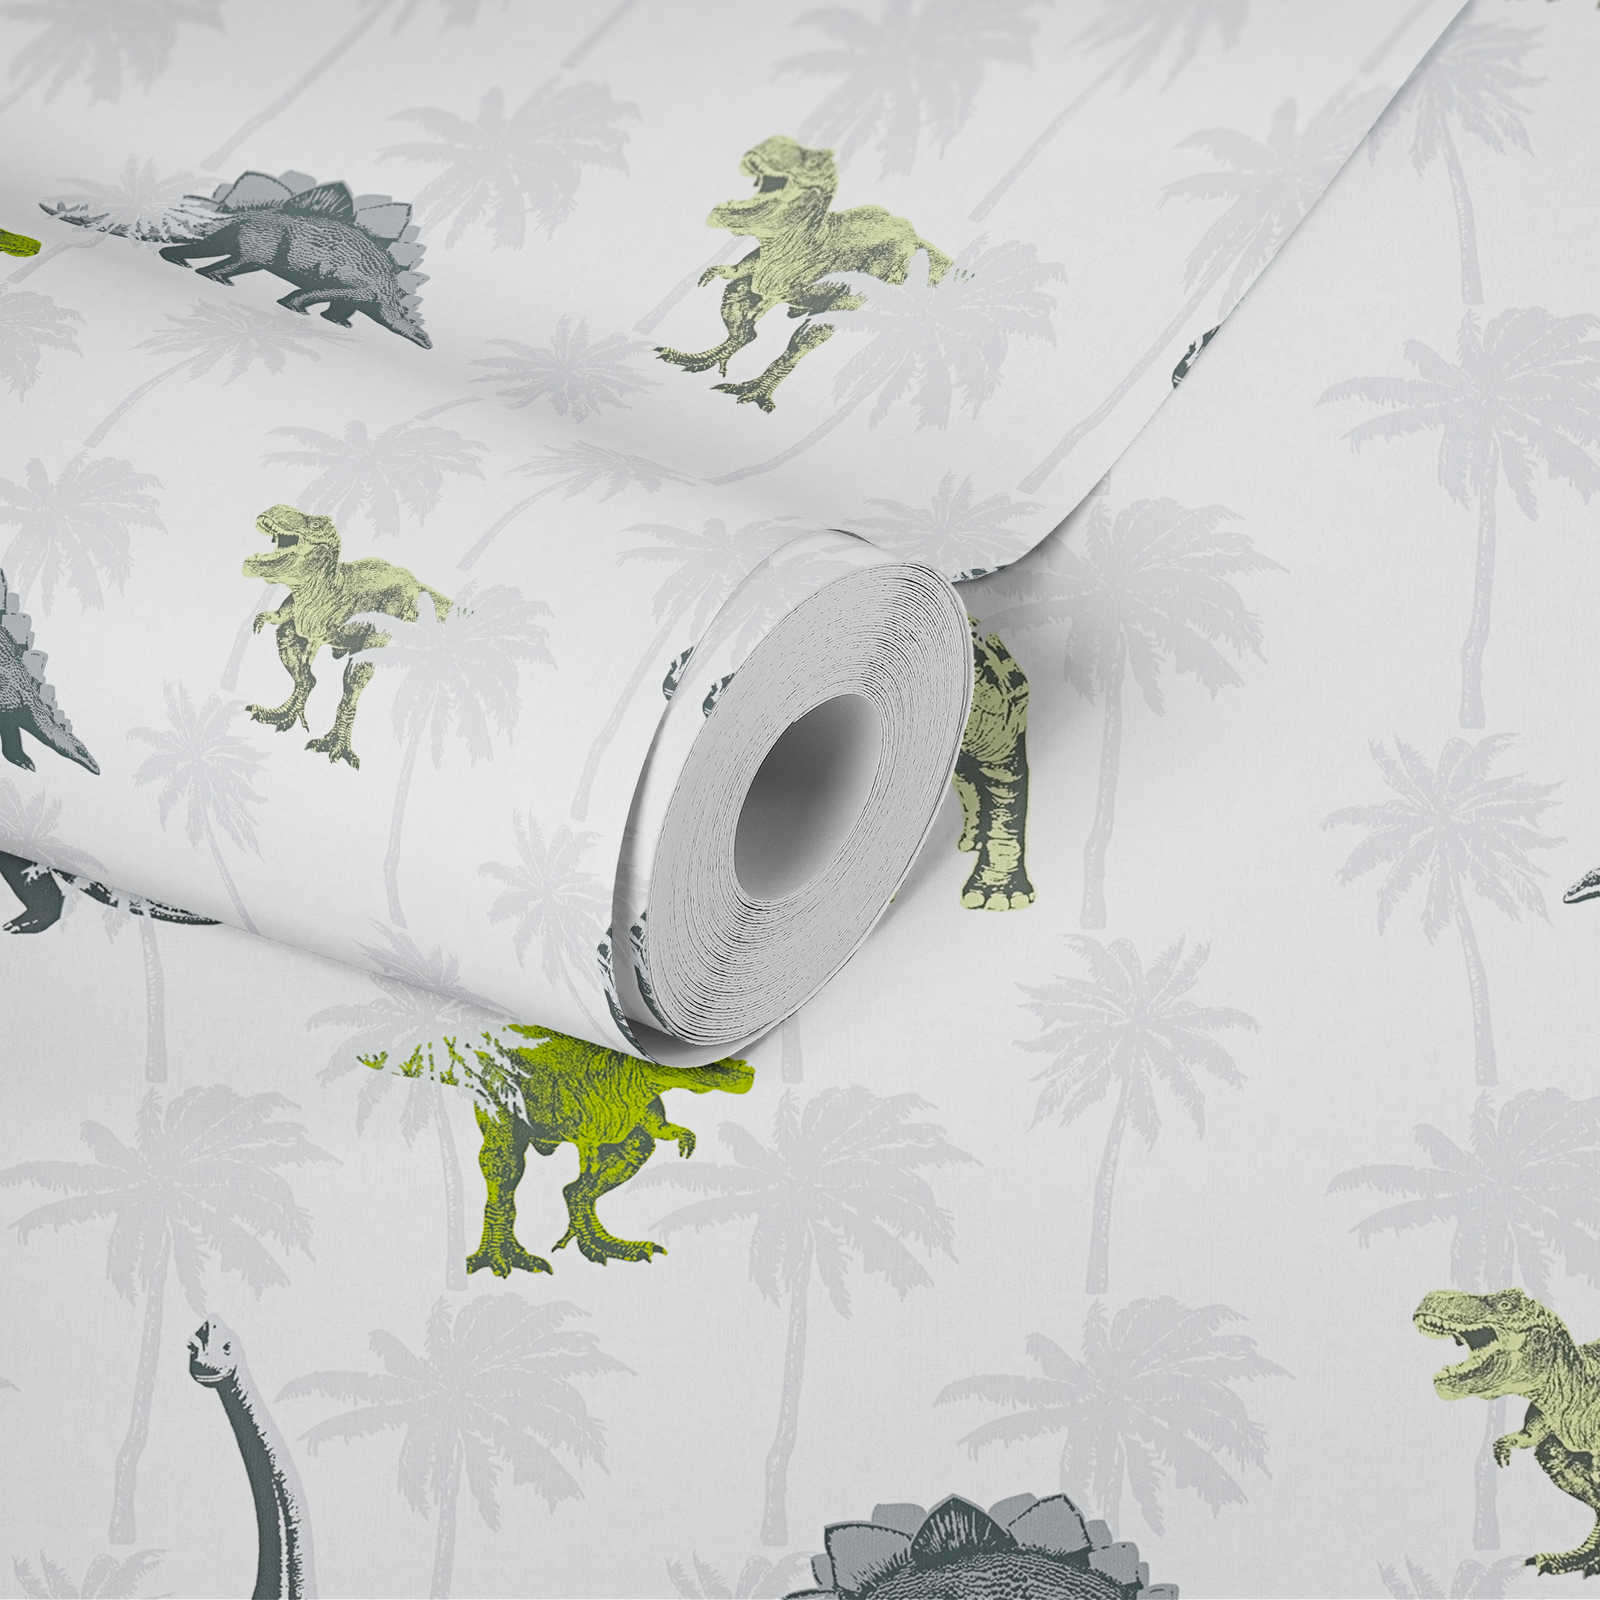             Kids room wallpaper dinosaur for boys - grey, green
        